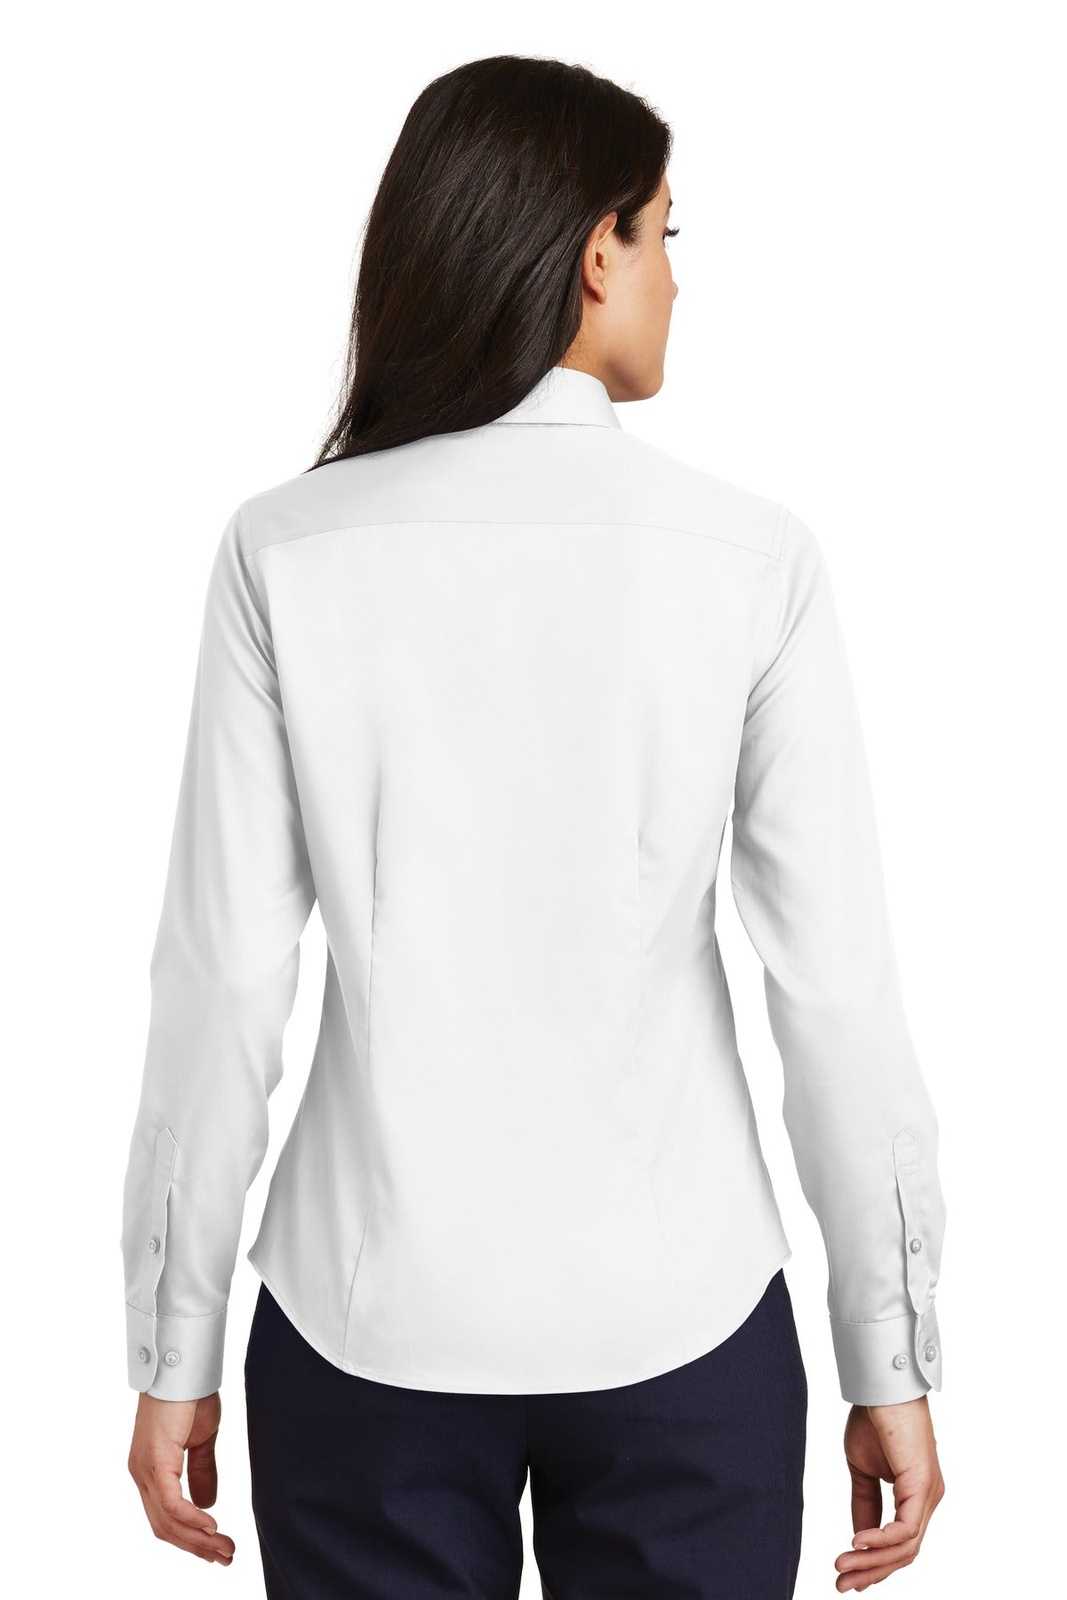 Port Authority L638 Ladies Non-Iron Twill Shirt - White - HIT a Double - 1